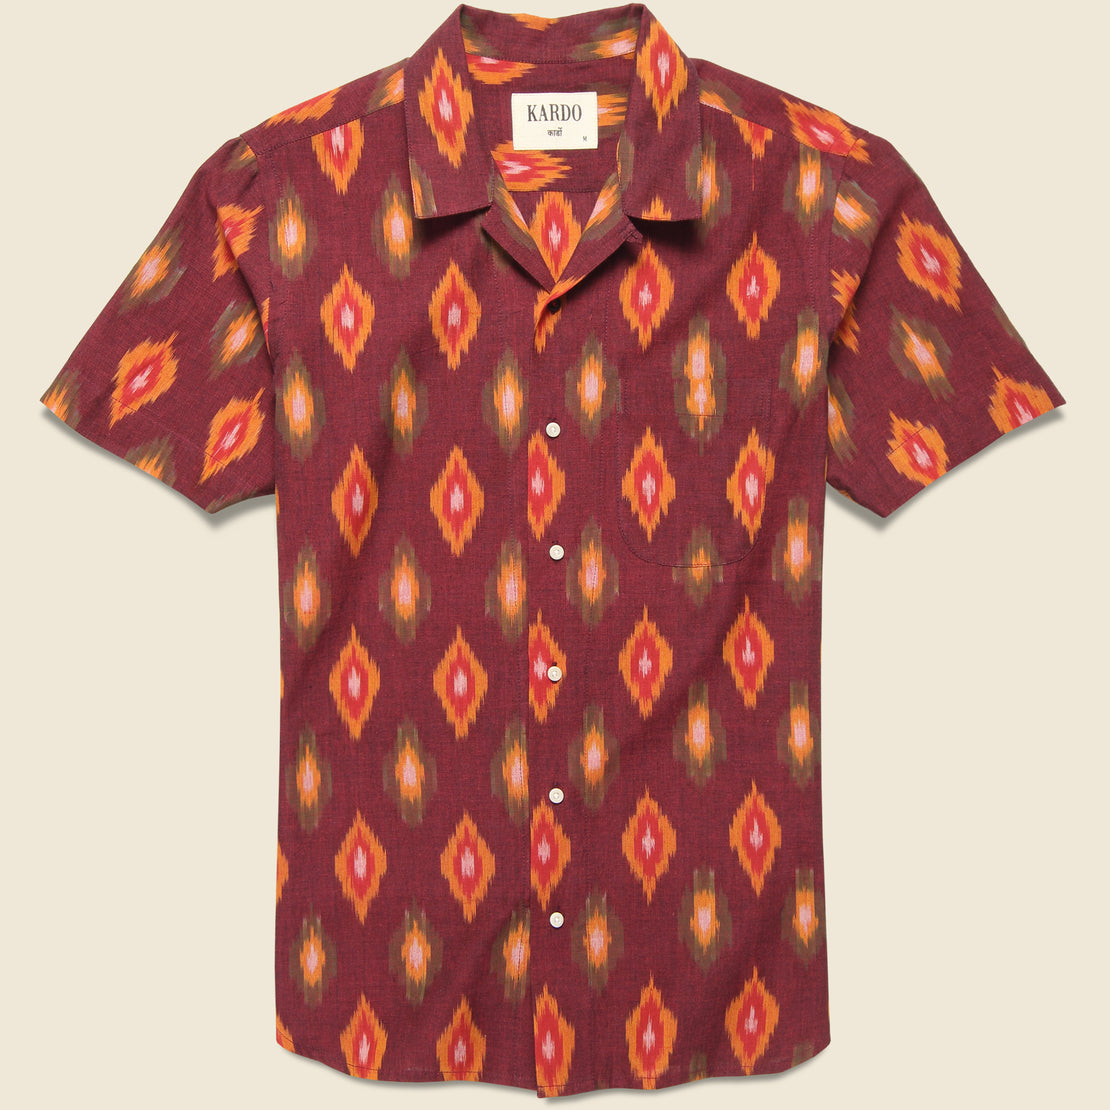 Kardo Lamar Ikat Shirt - Burgundy/Orange